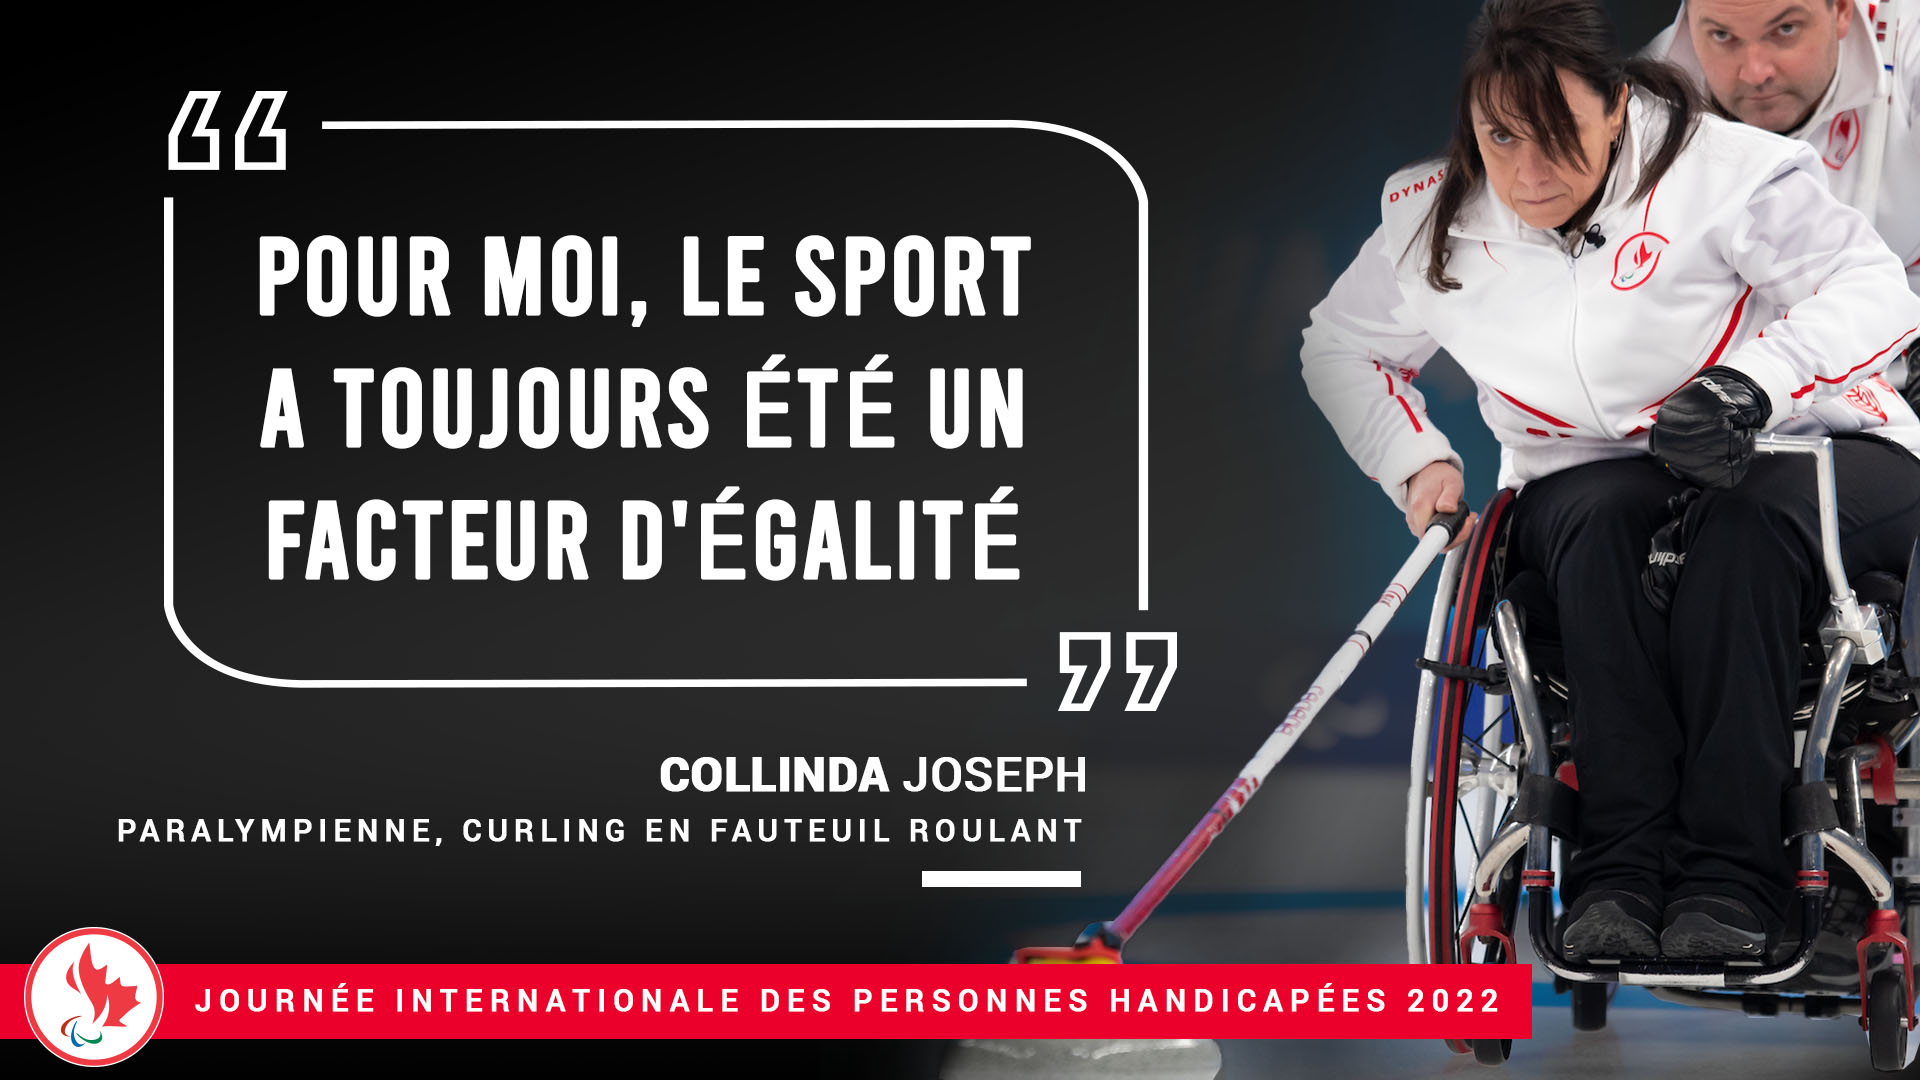 Une image de Collinda Joseph, curling en fauteuil roulant, avec le quotation "Pour moi, le sport a toujours été un facteur d'égalité"